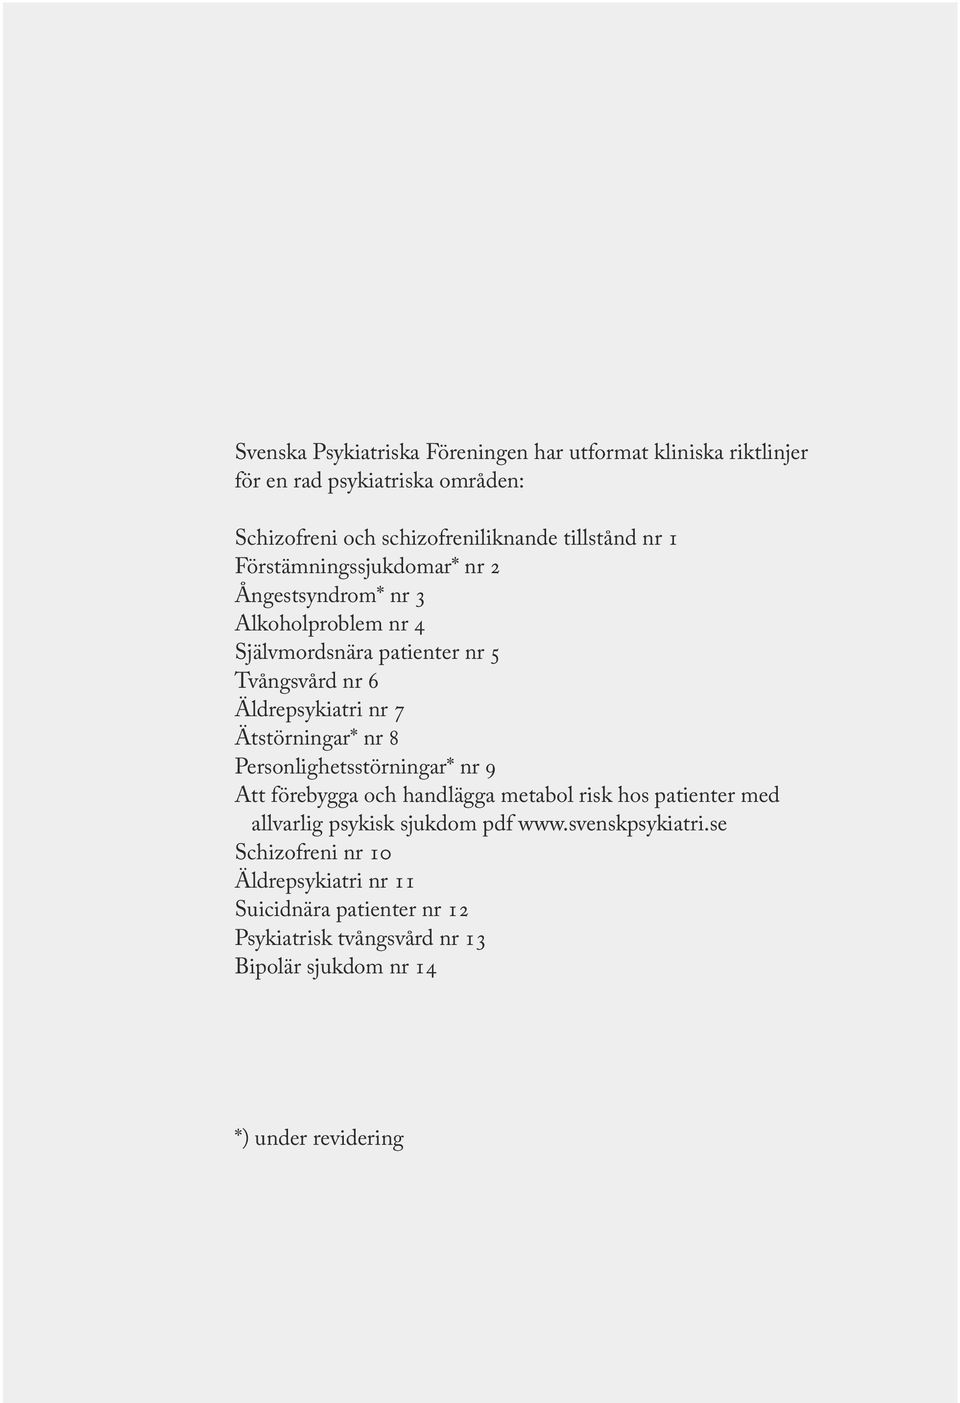 Ätstörningar* nr 8 Personlighetsstörningar* nr 9 Att förebygga och handlägga metabol risk hos patienter med allvarlig psykisk sjukdom pdf www.